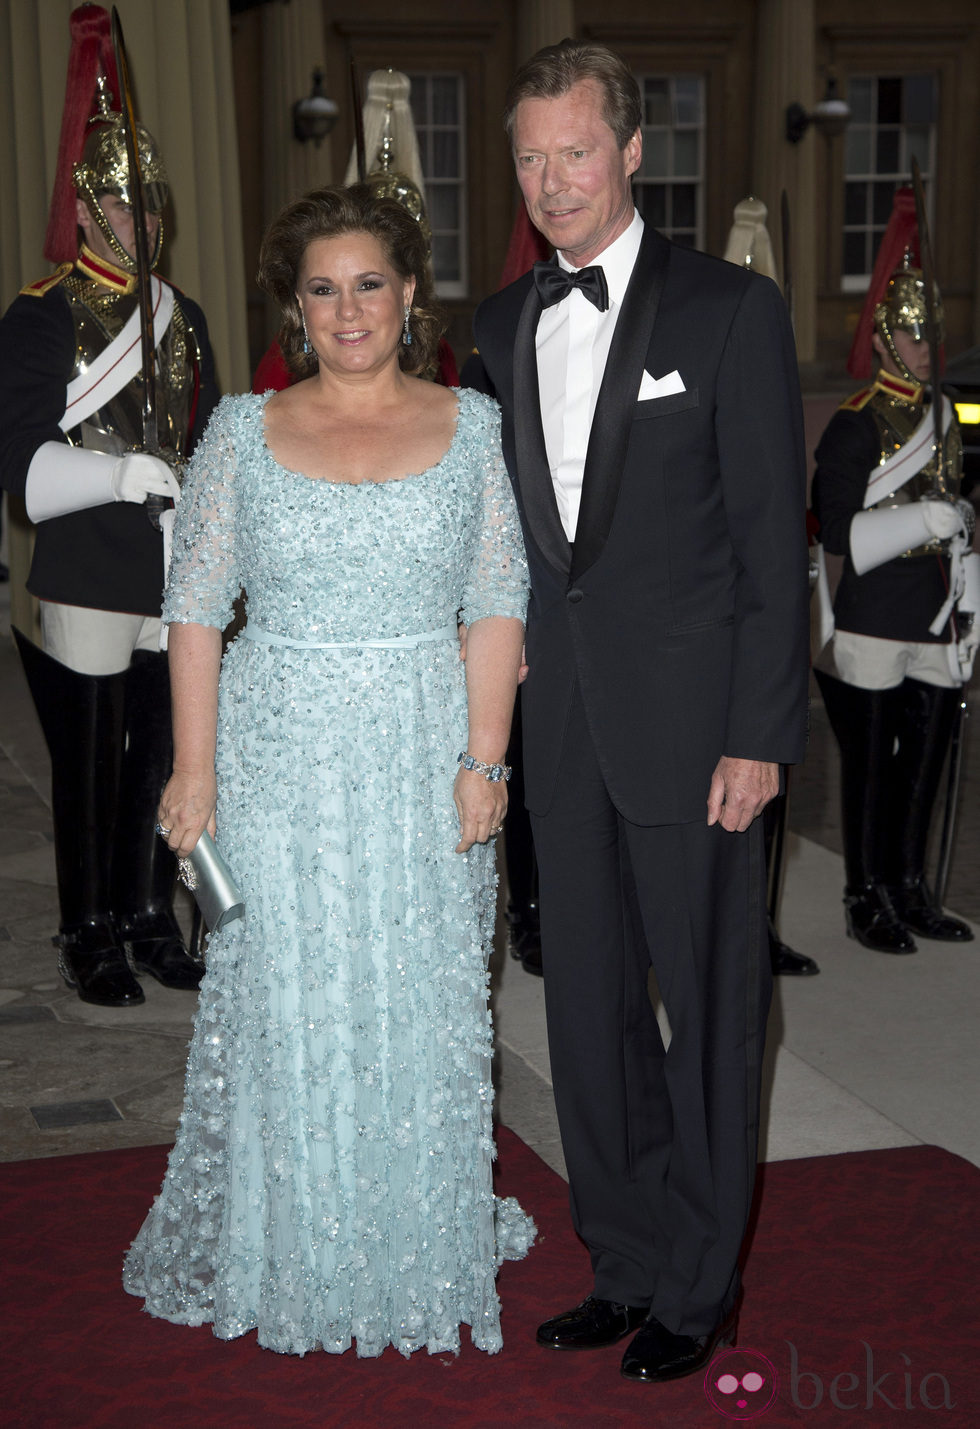 Los Grandes Duques de Luxemburgo en una cena de gala en Buckingham Palace